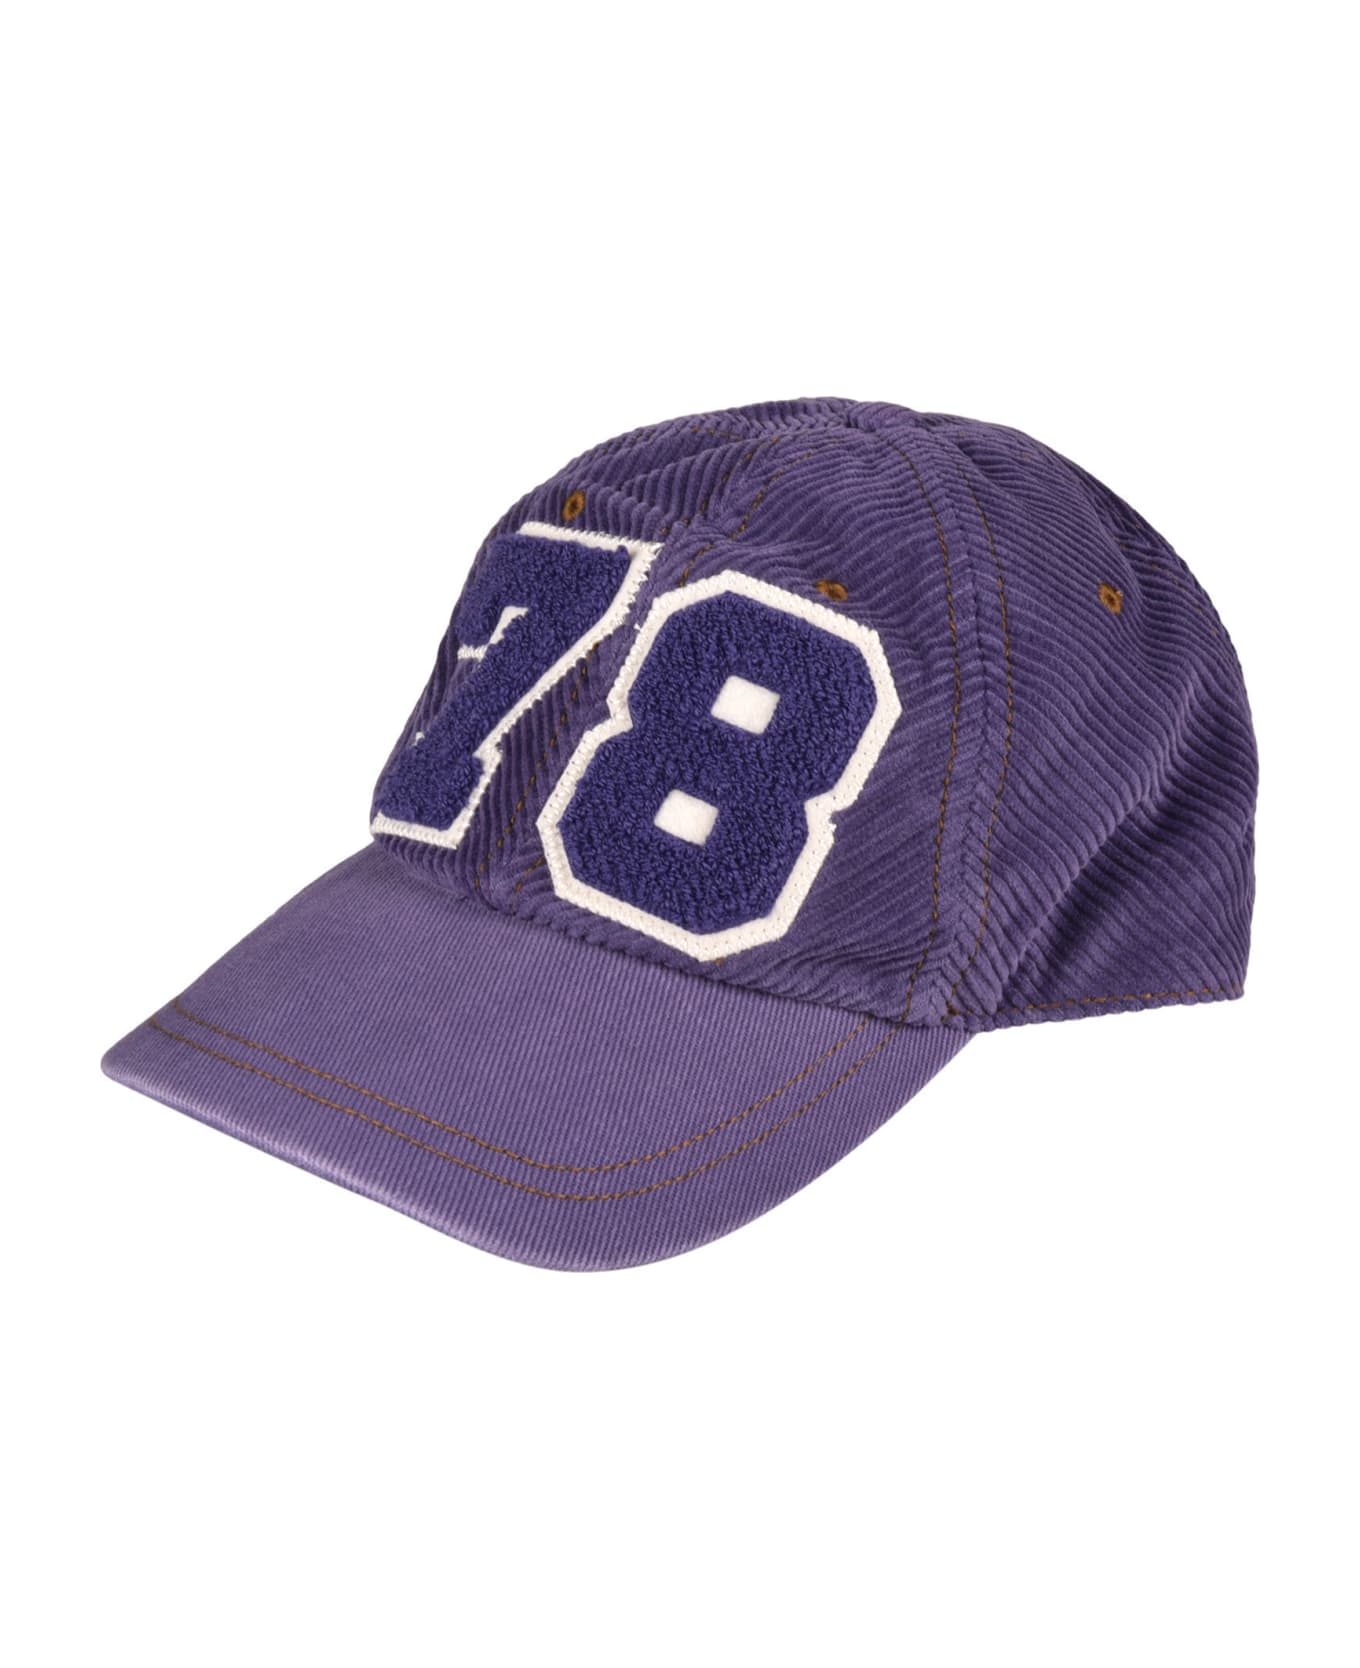 Golden Goose 78 Baseball Cap - Violet/Indigo